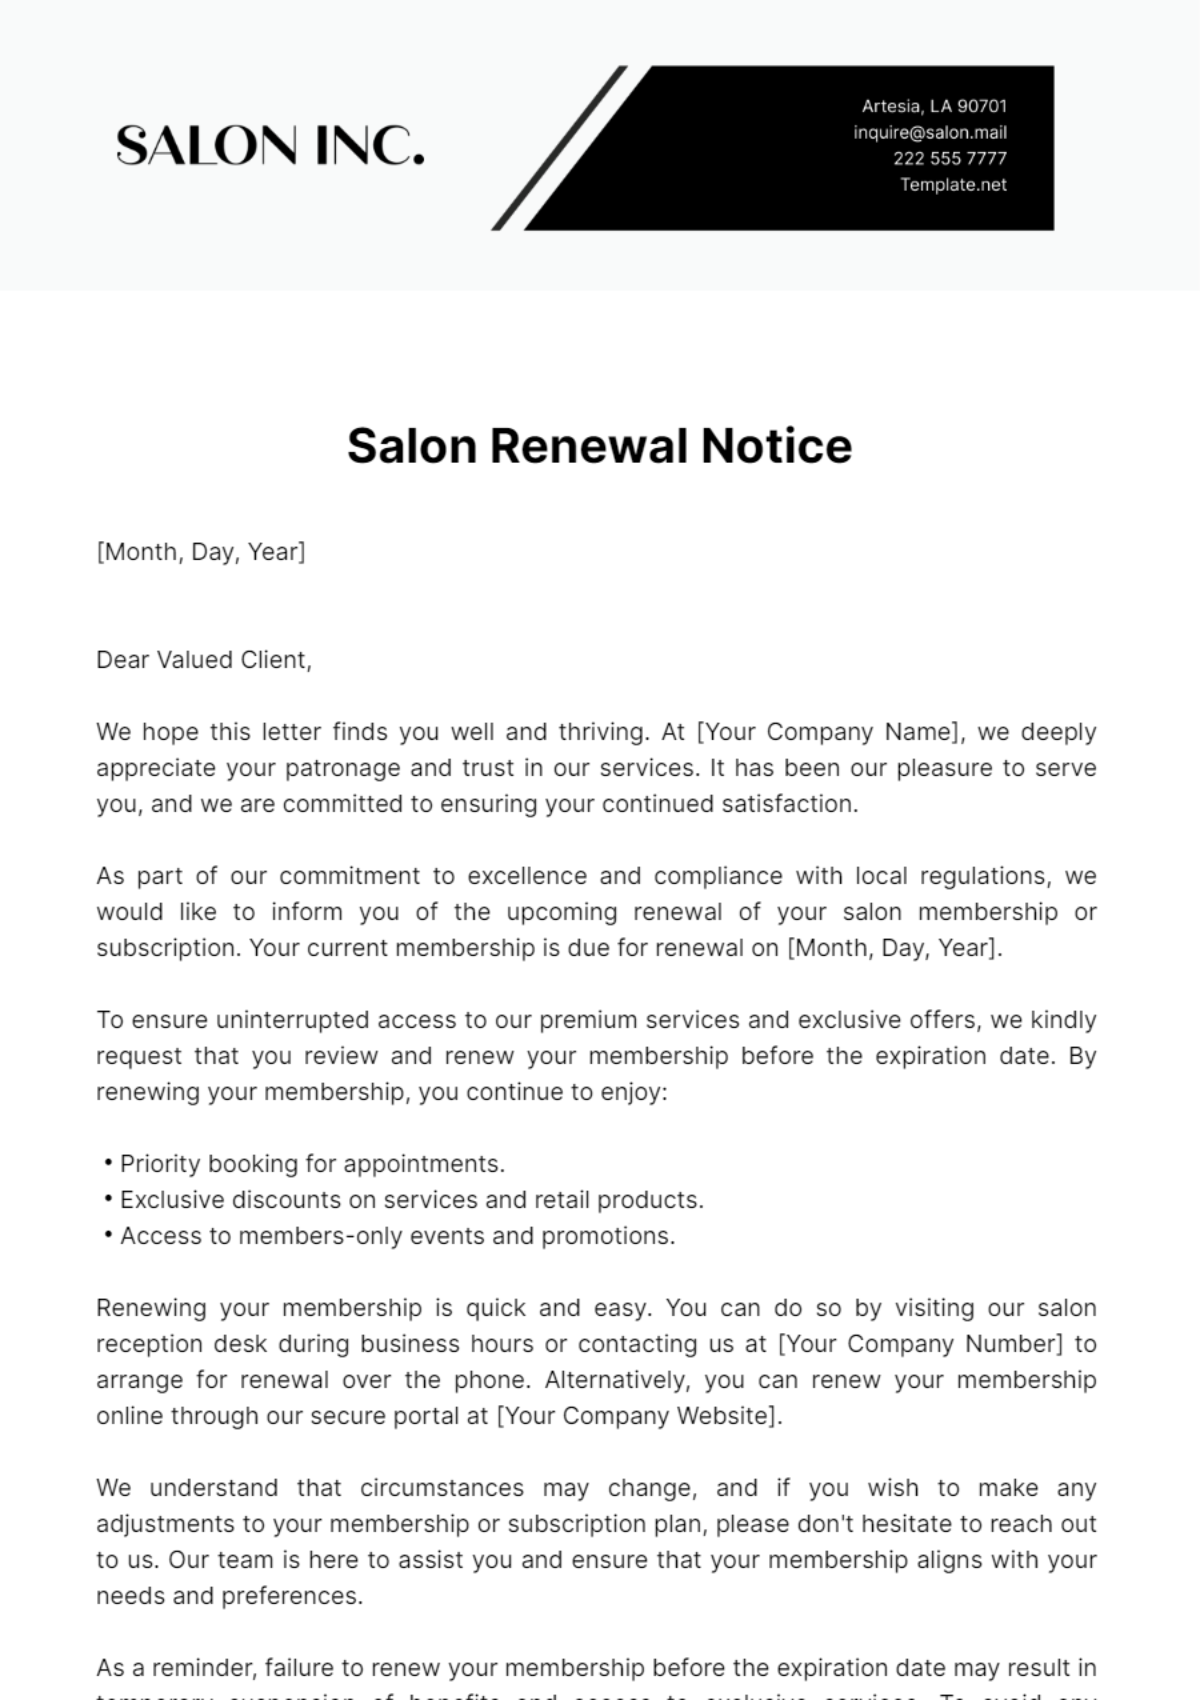 Salon Renewal Notice Template